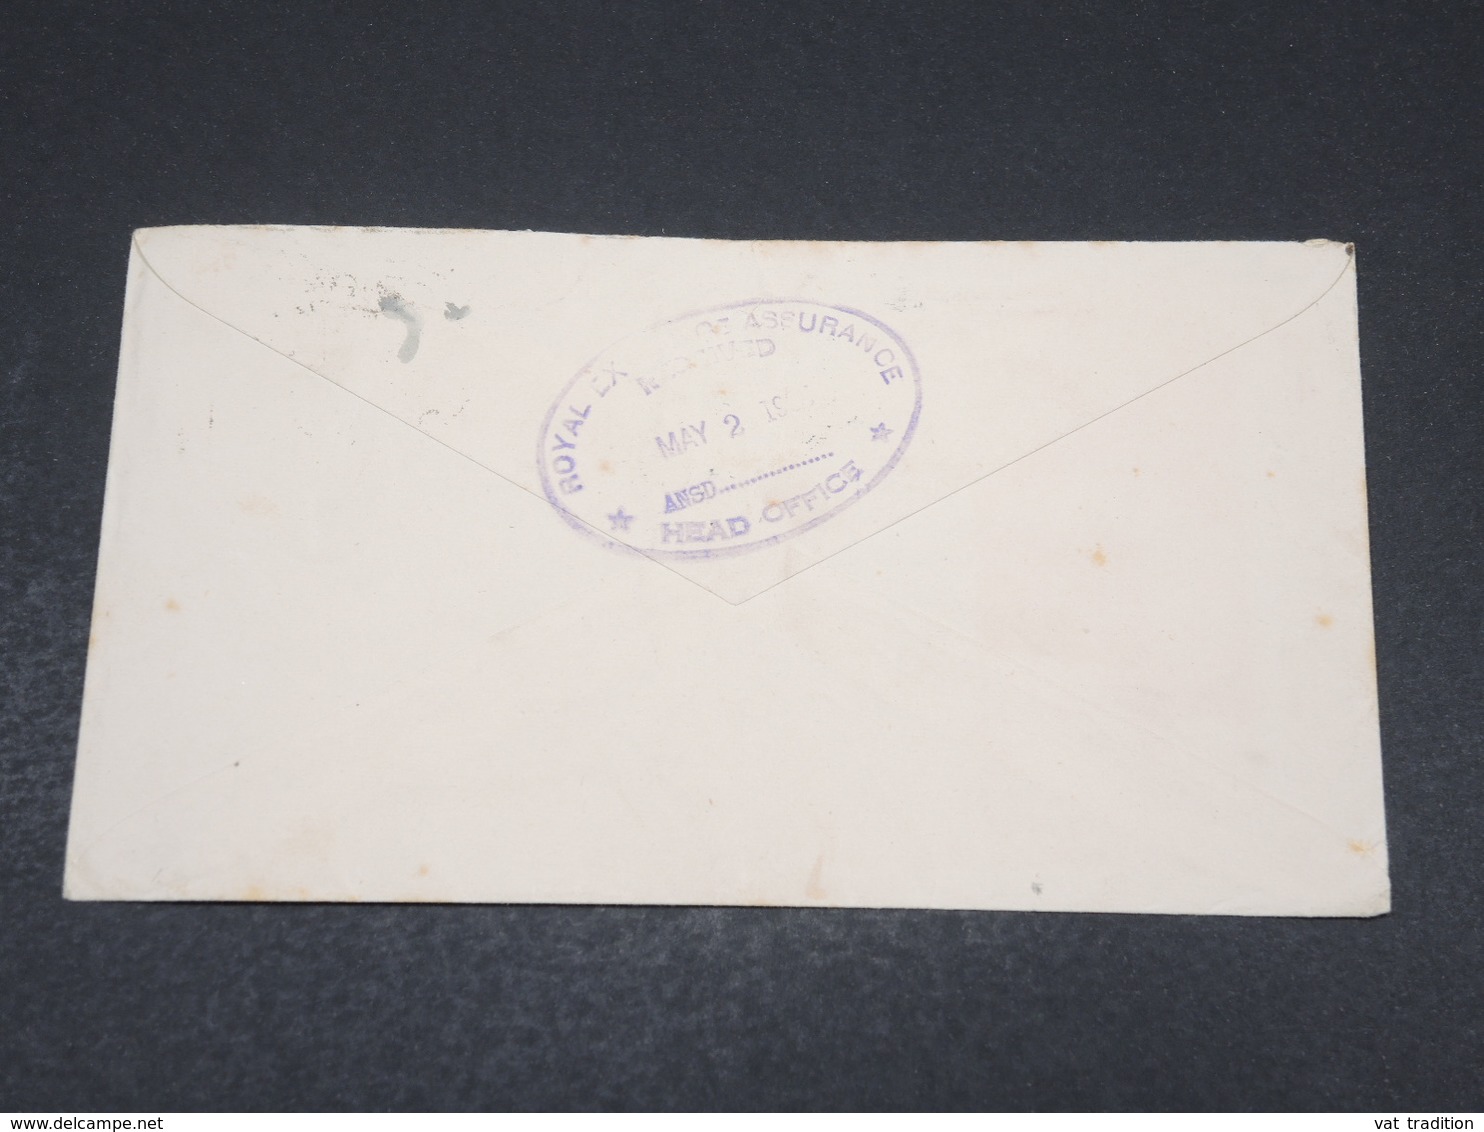 NOUVELLE ZÉLANDE - Enveloppe Illustrée De Wellington En 1935 - L 17515 - Lettres & Documents